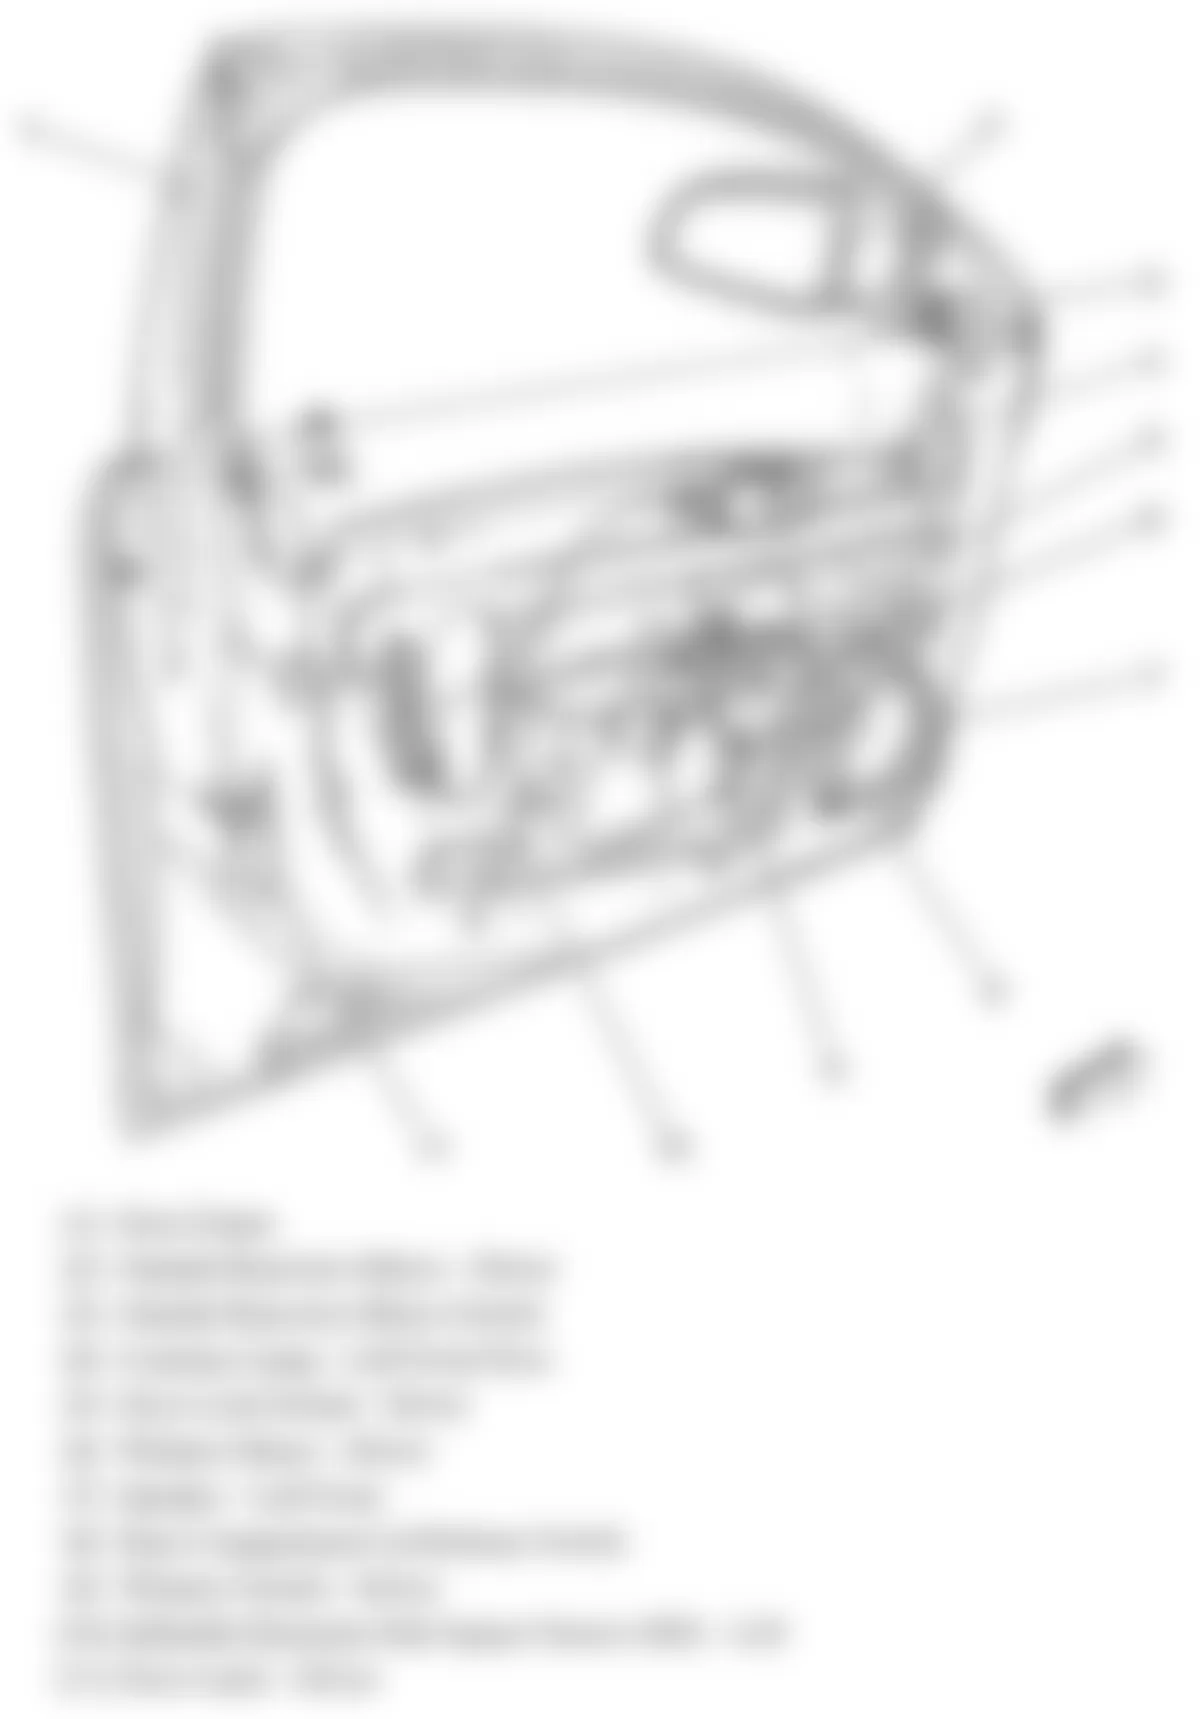 Chevrolet Malibu LTZ 2009 - Component Locations -  Drivers Door